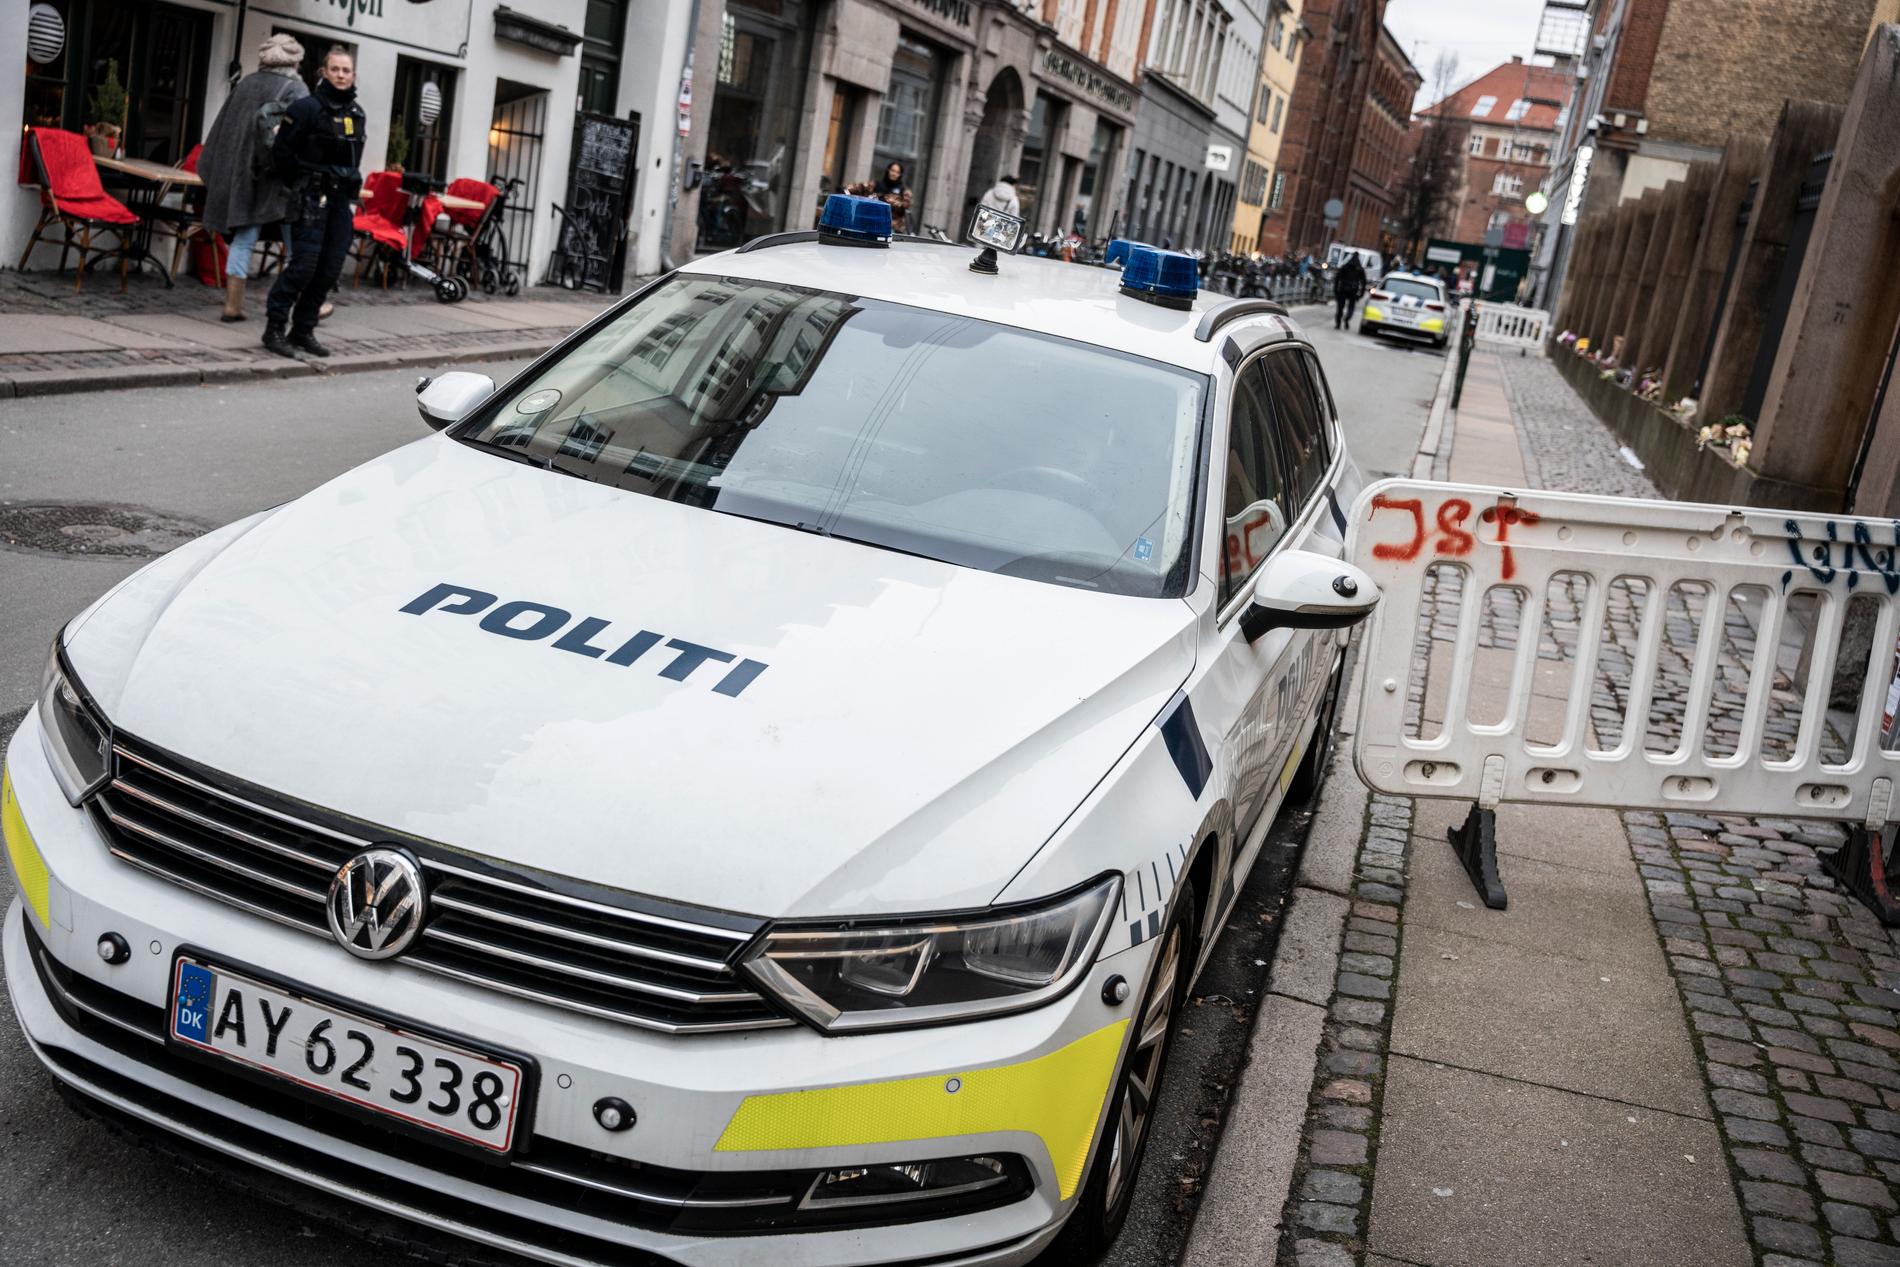 Polis på plats i Köpenhamn efter gripandena.